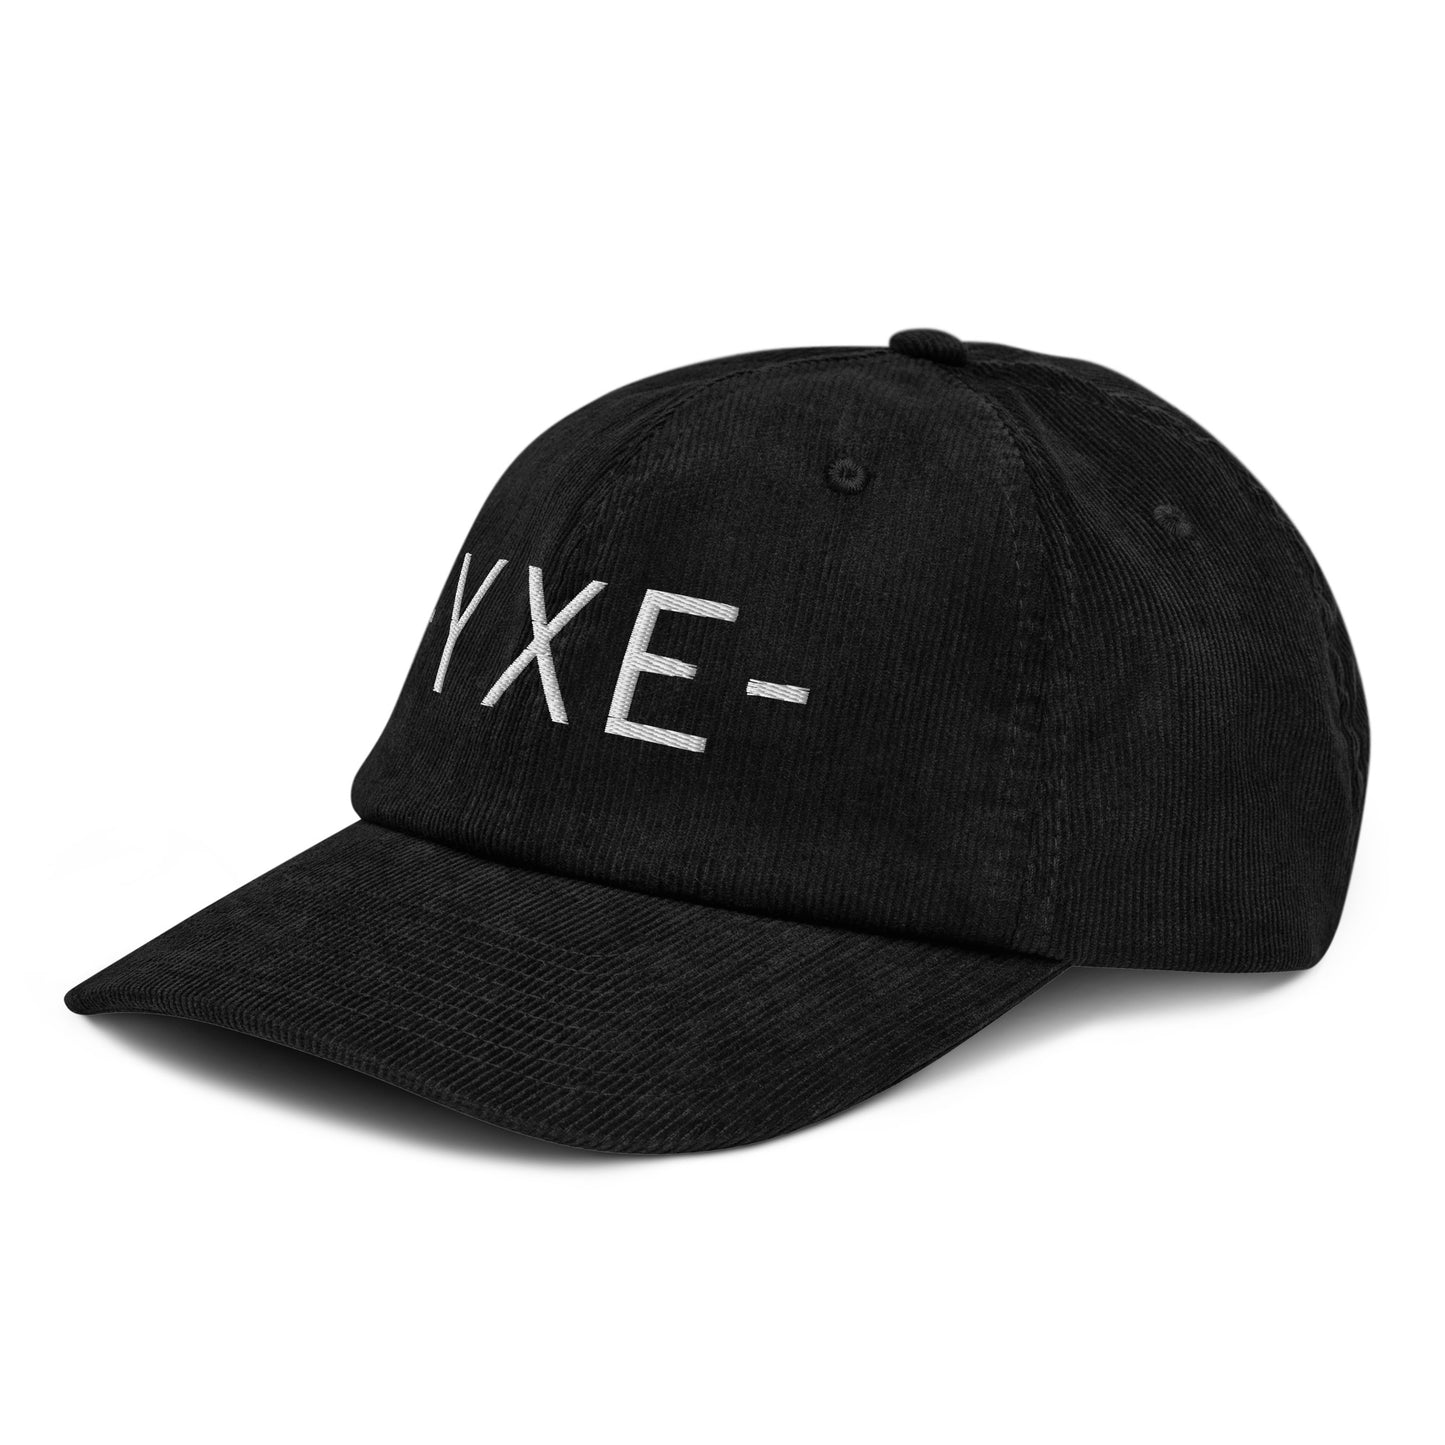 Souvenir Corduroy Hat - White • YXE Saskatoon • YHM Designs - Image 14